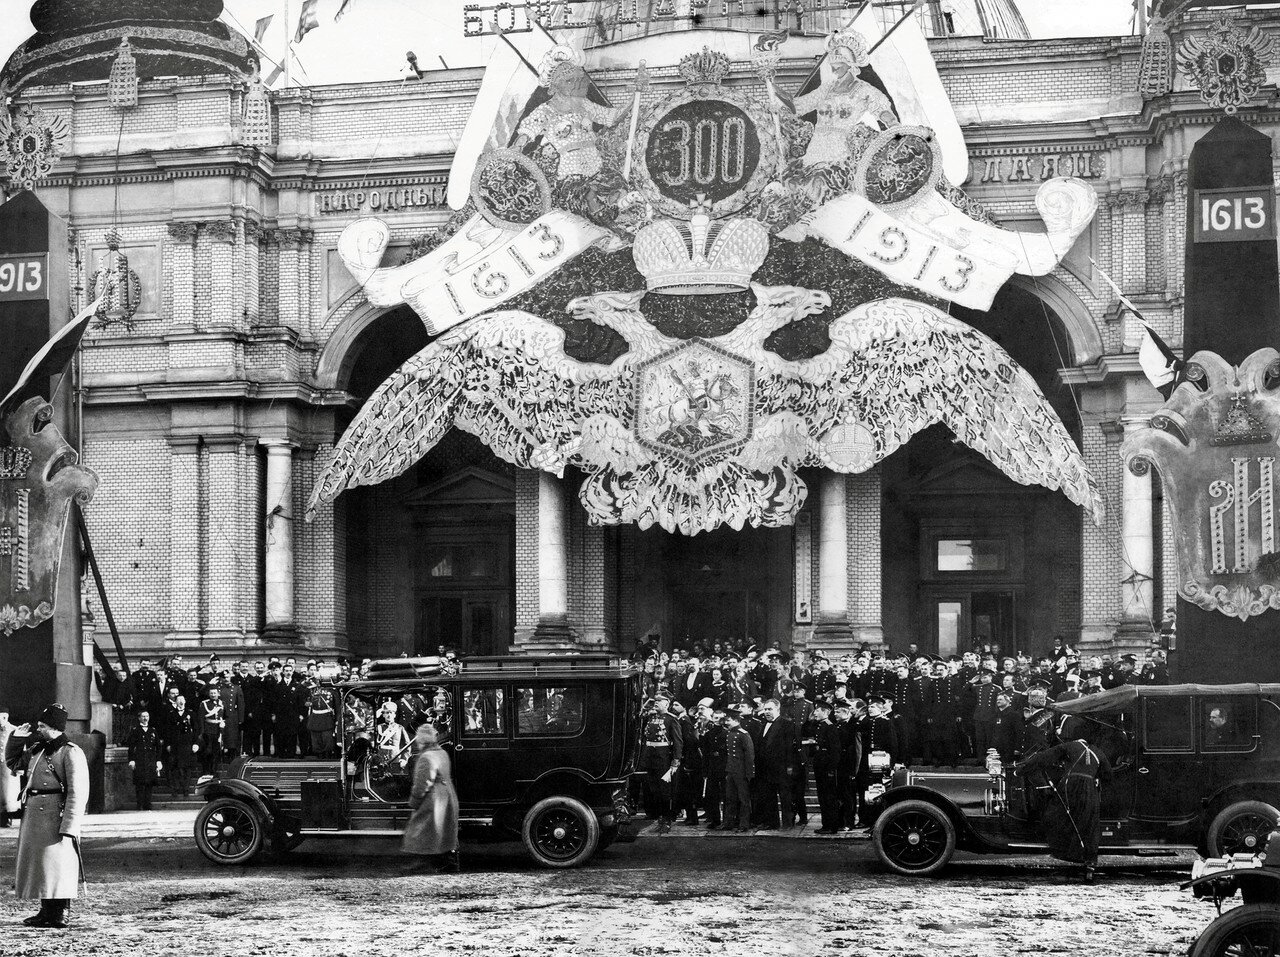 Фасад Народного дома императора Николая II (в Александровском парке) в дни празднования 300-летия Дома Романовых. 1913